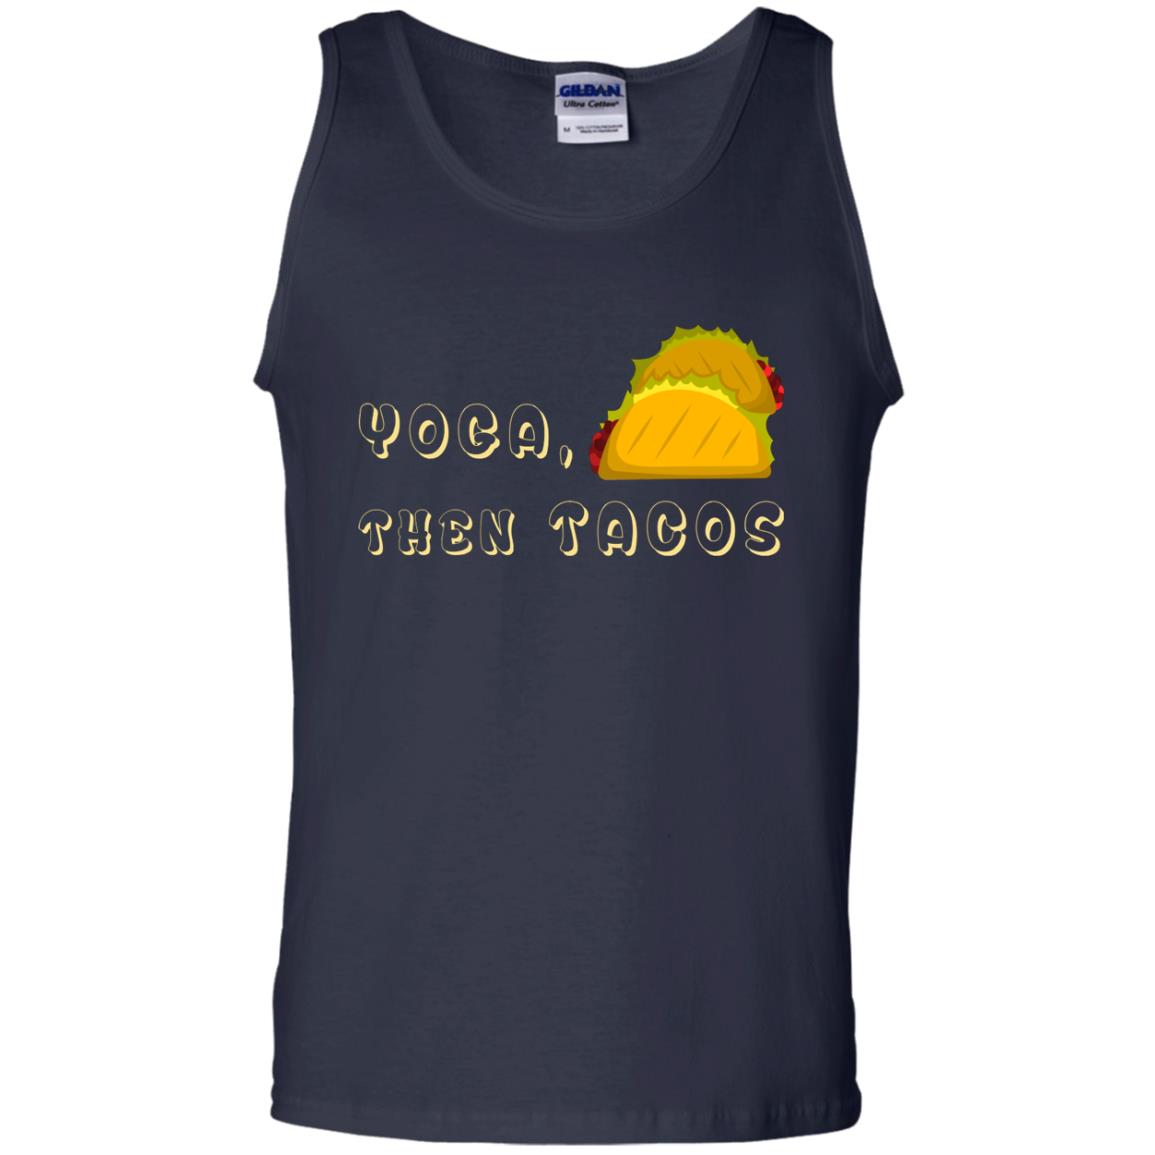 Yoga Then Tacos Shirt For Taco DayG220 Gildan 100% Cotton Tank Top